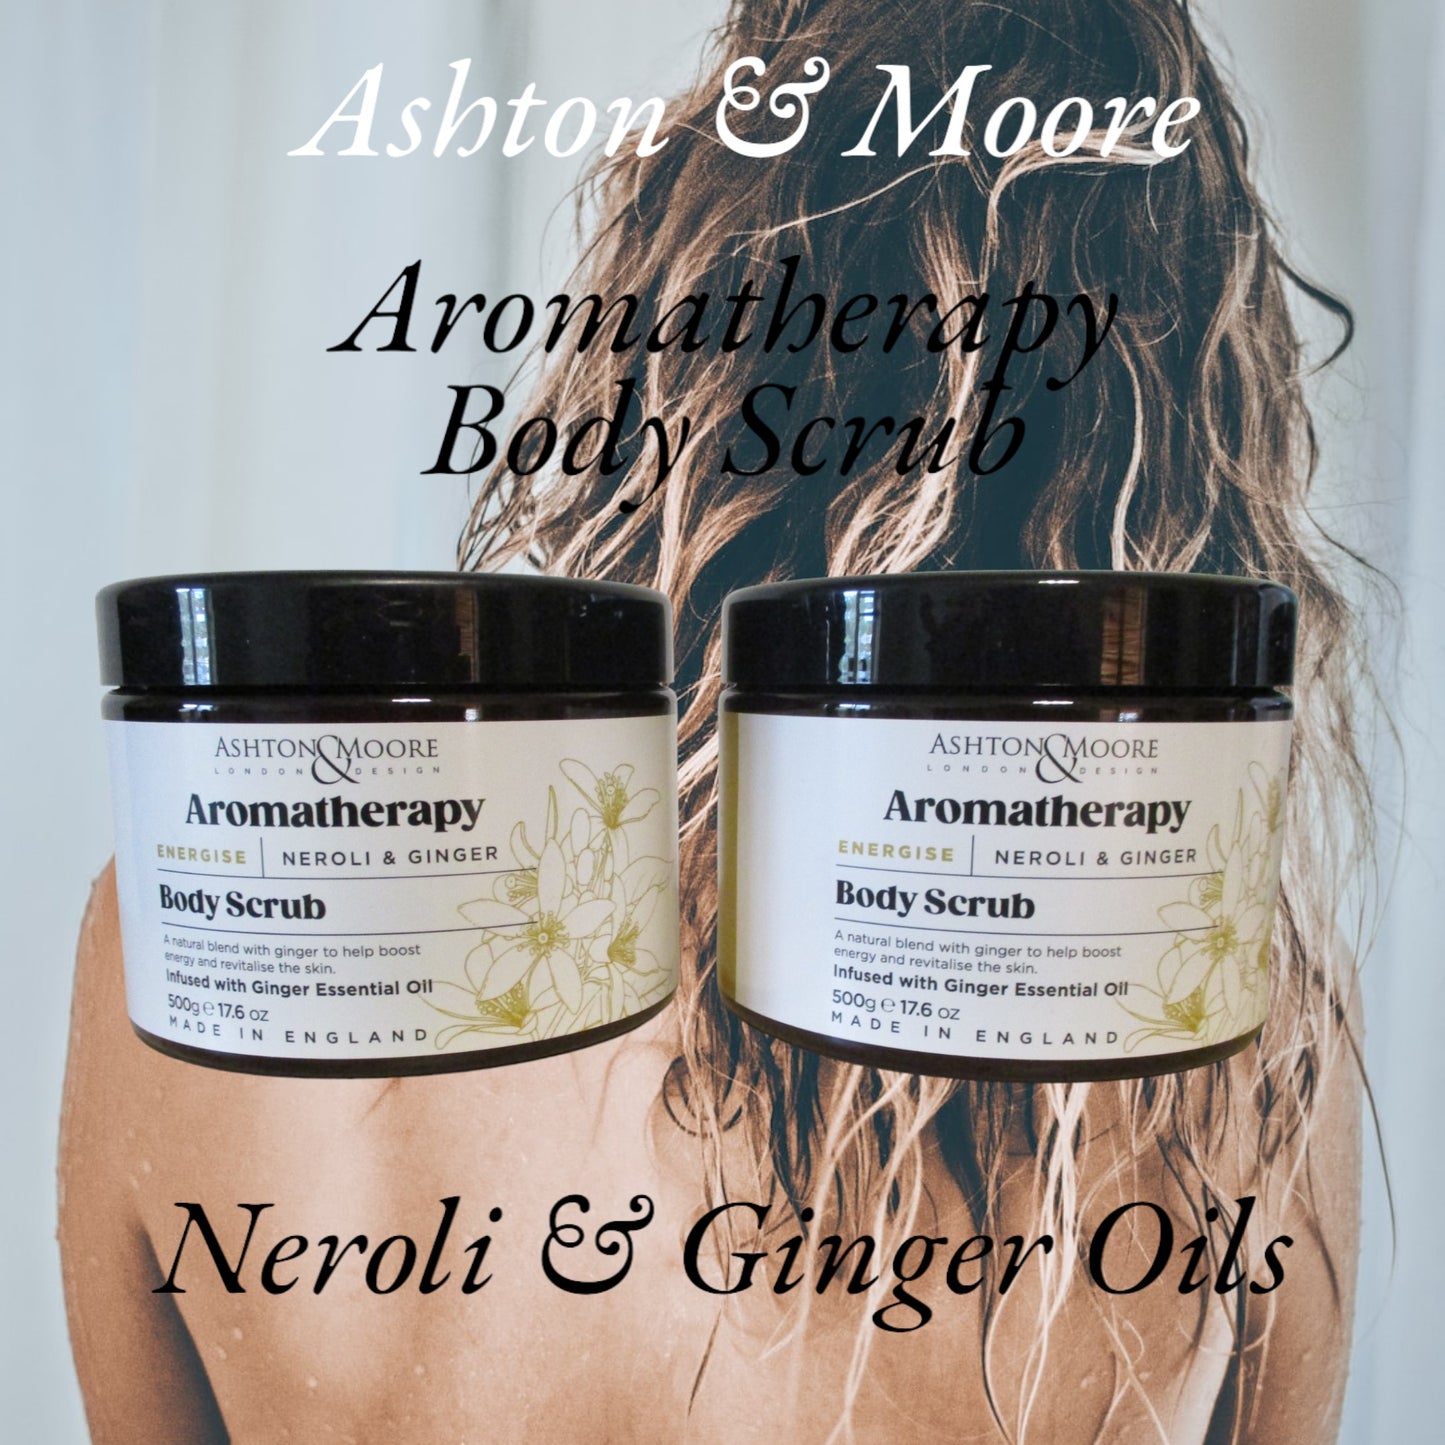 Ashton & Moore – Aromatherapy Body Wash & Body Scrub.Wash